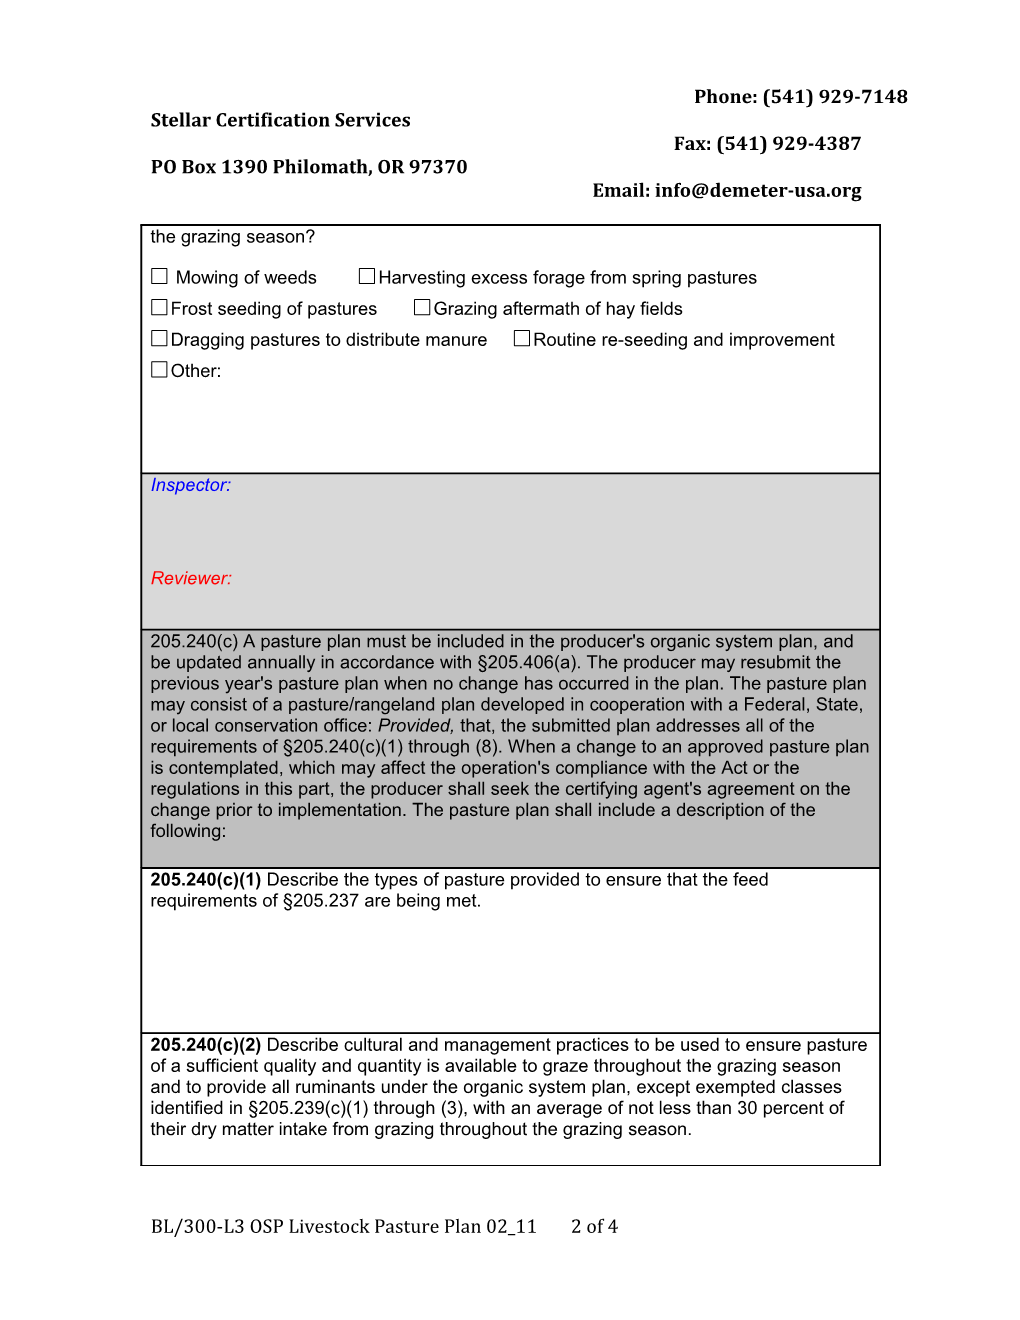 Stellar Certification Servicesfax: (541) 929-4387